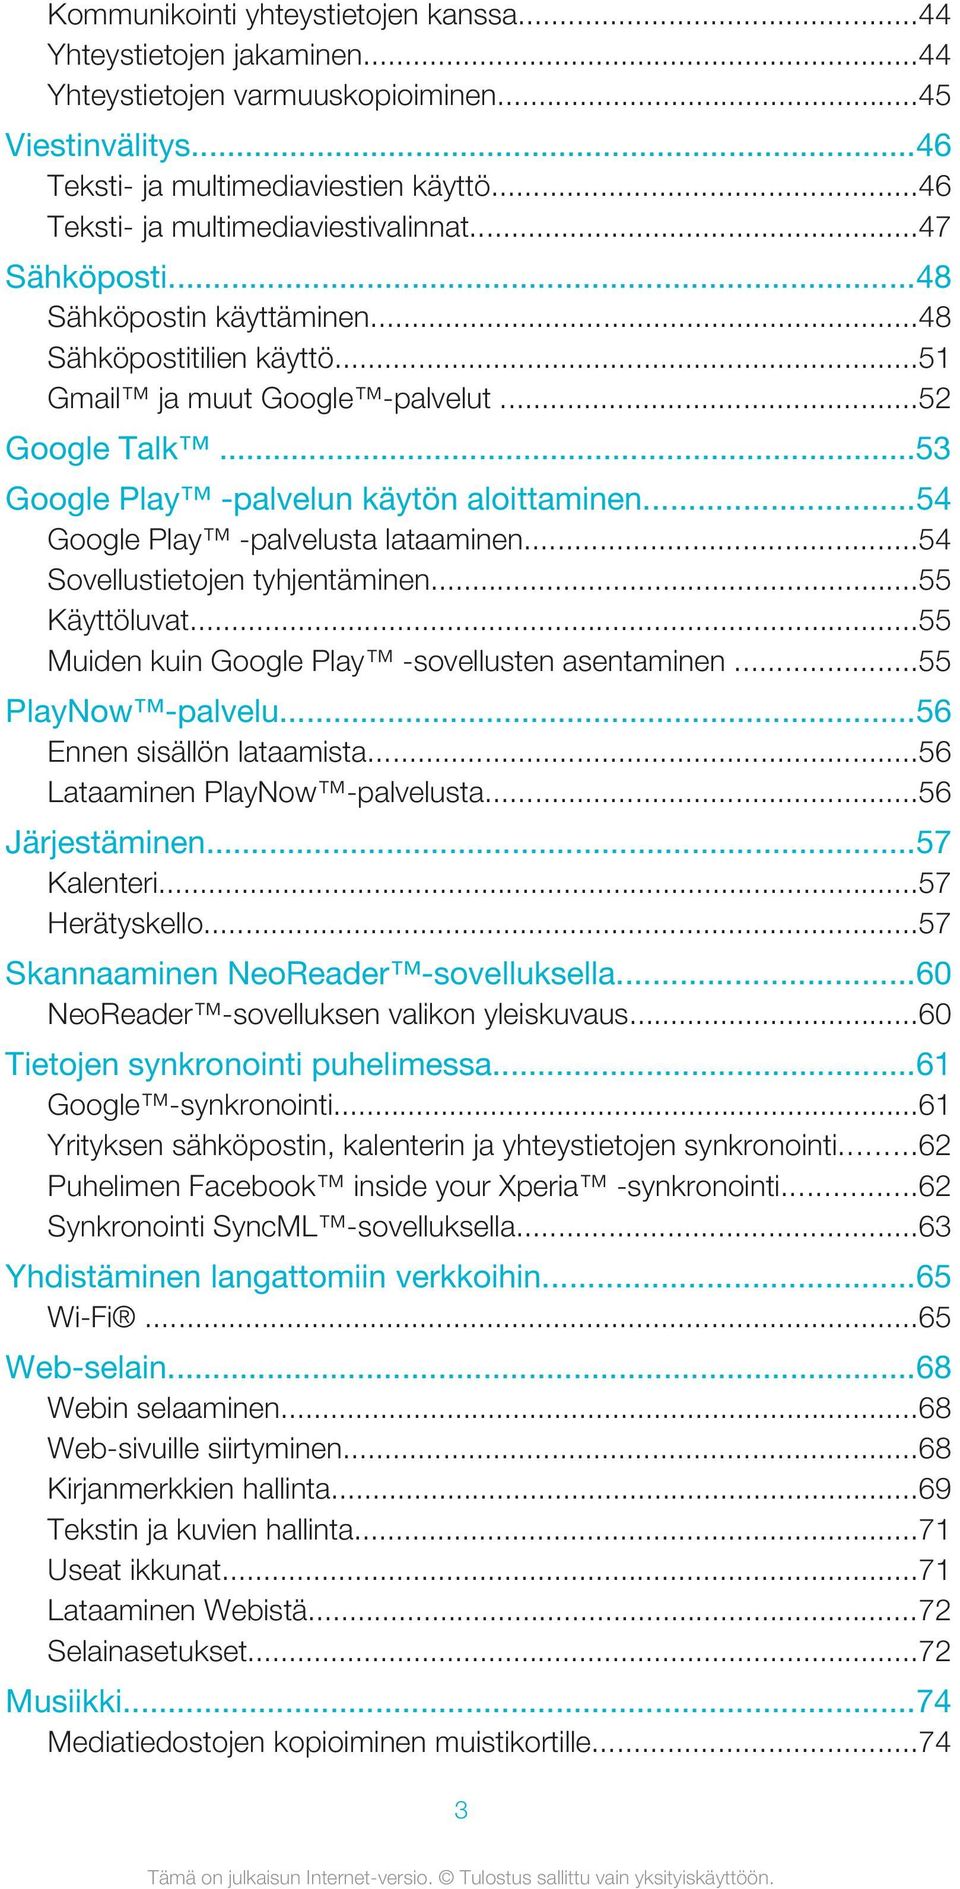 ..53 Google Play -palvelun käytön aloittaminen...54 Google Play -palvelusta lataaminen...54 Sovellustietojen tyhjentäminen...55 Käyttöluvat...55 Muiden kuin Google Play -sovellusten asentaminen.